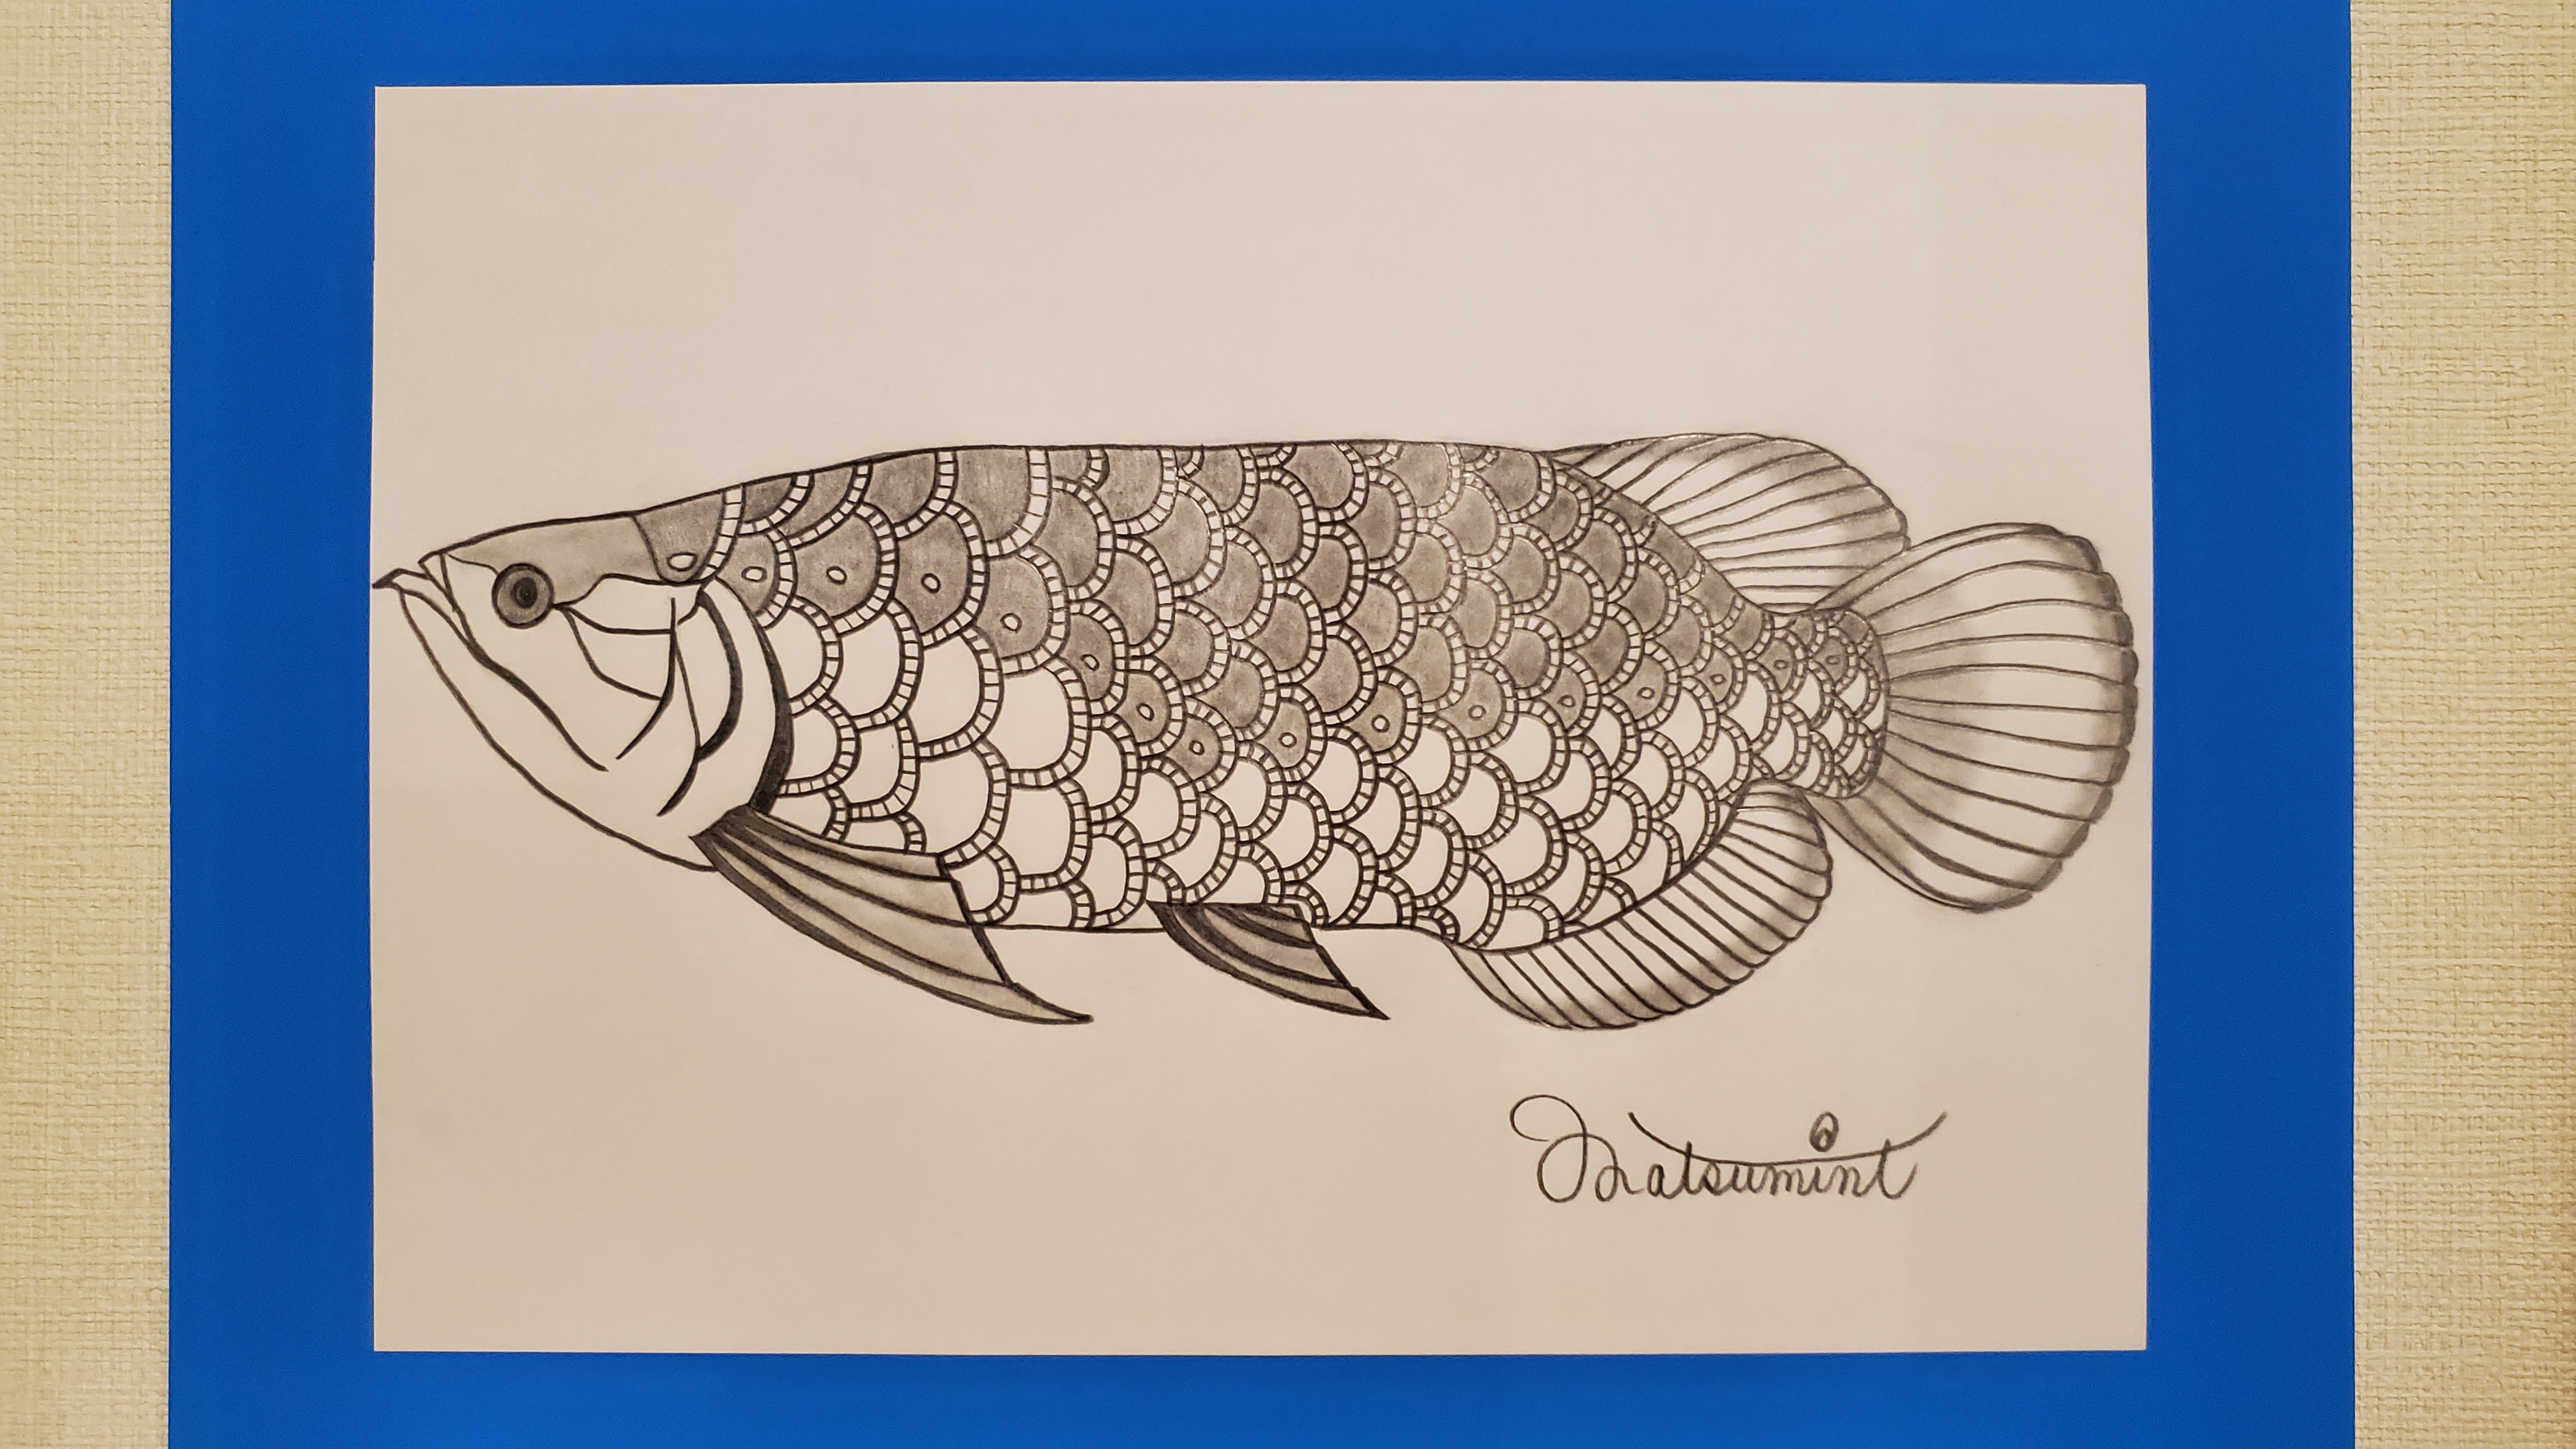 Matsumint 小杉湯さんで展示してたイラスト 今回はアロワナです 大きくてキレイでカッコイイ淡水魚 私のイラスト の鱗はなんだか鯉のぼりのように仕上がりましたww イラスト アロワナ 鉛筆画 Illustration Art 淡水魚 魚 Fish Arowana